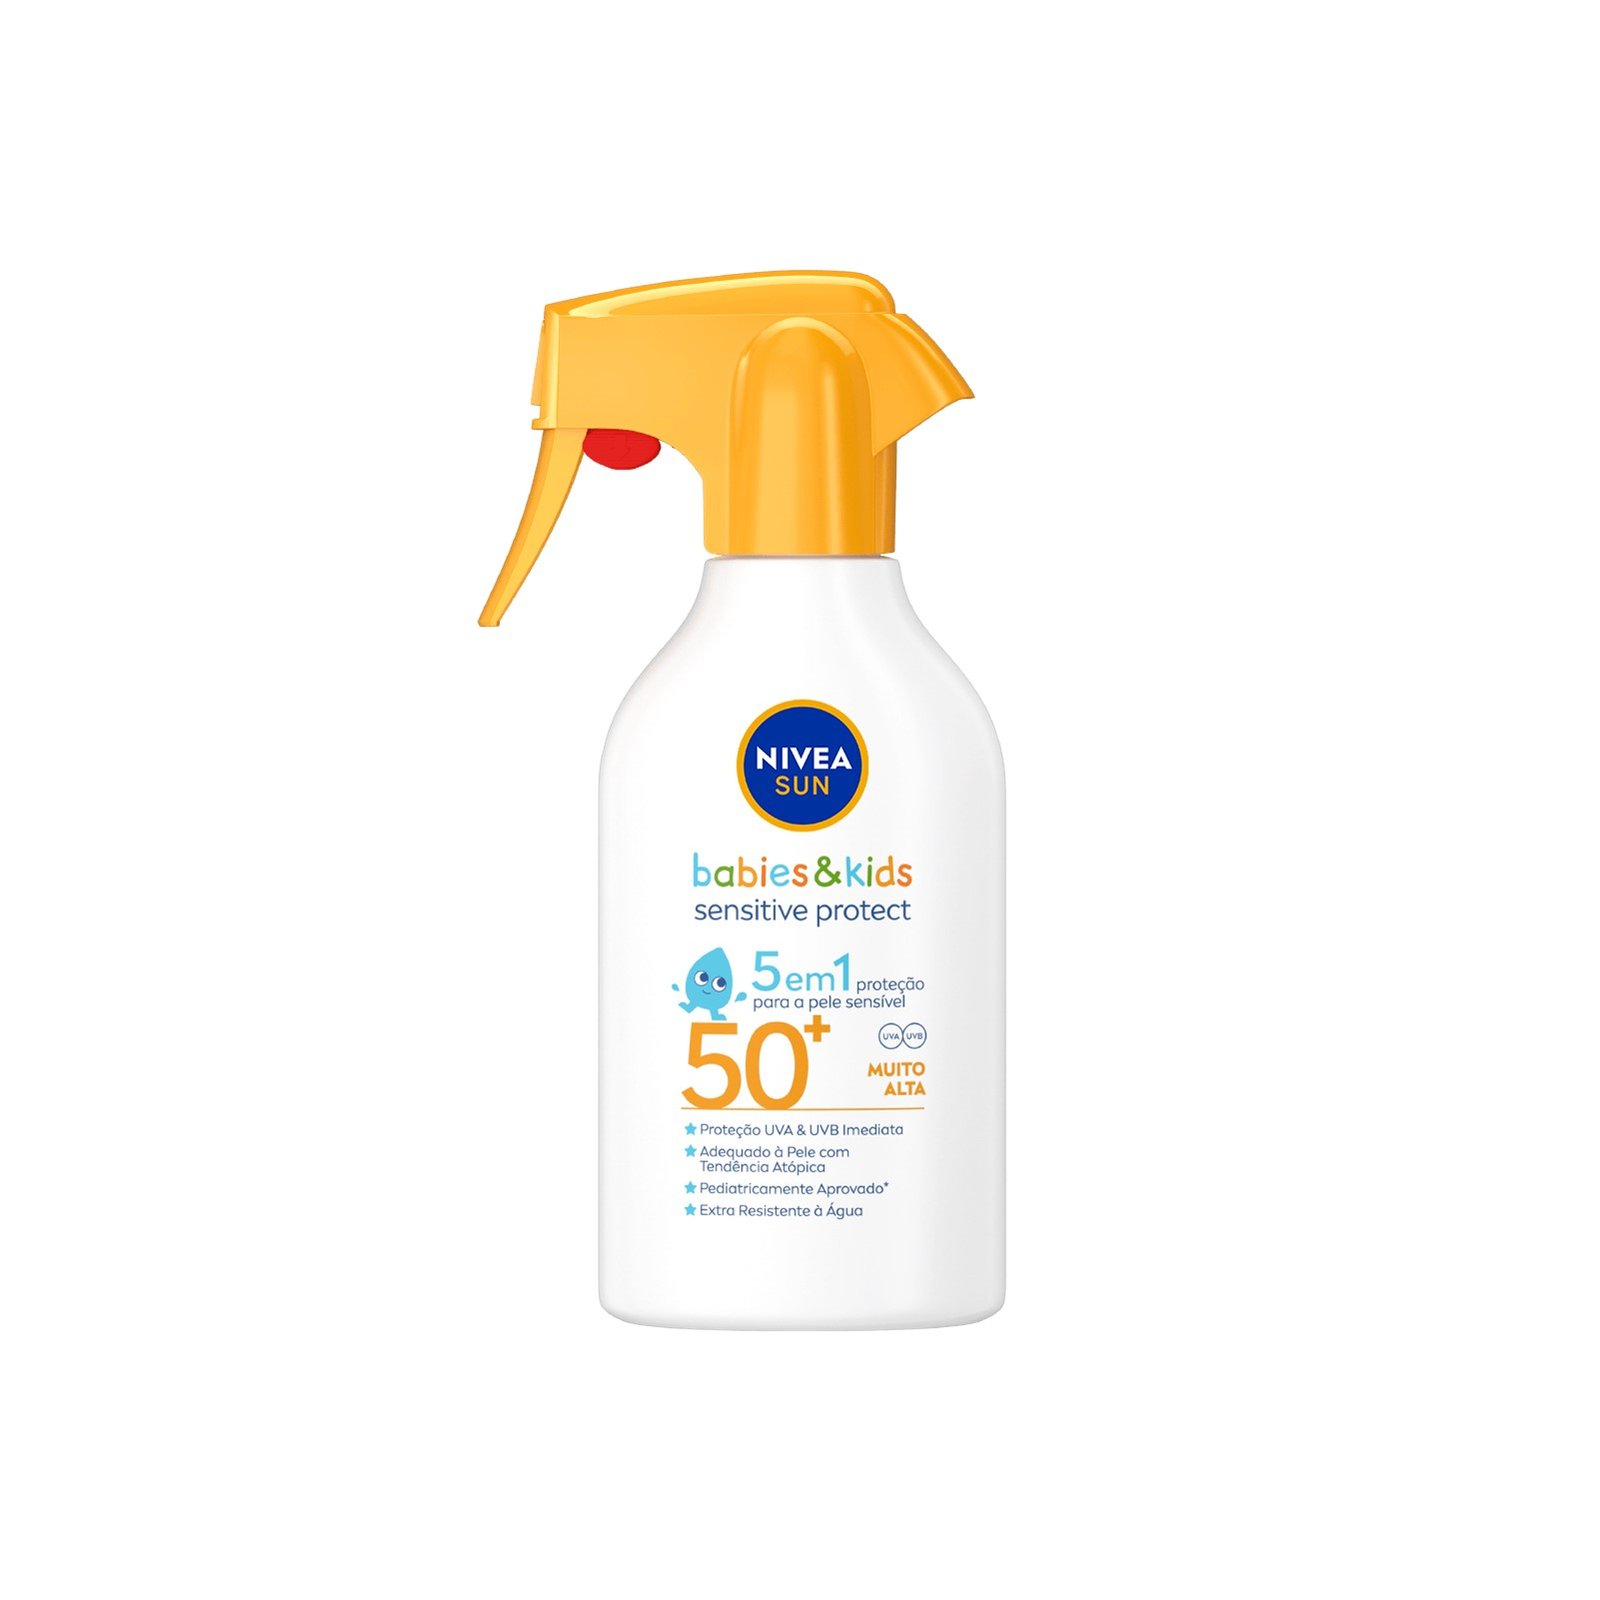 Nivea Sun Babies & Kids Sensitive Protect 5-in-1 Spray SPF50+ 270ml (9.13 fl oz)